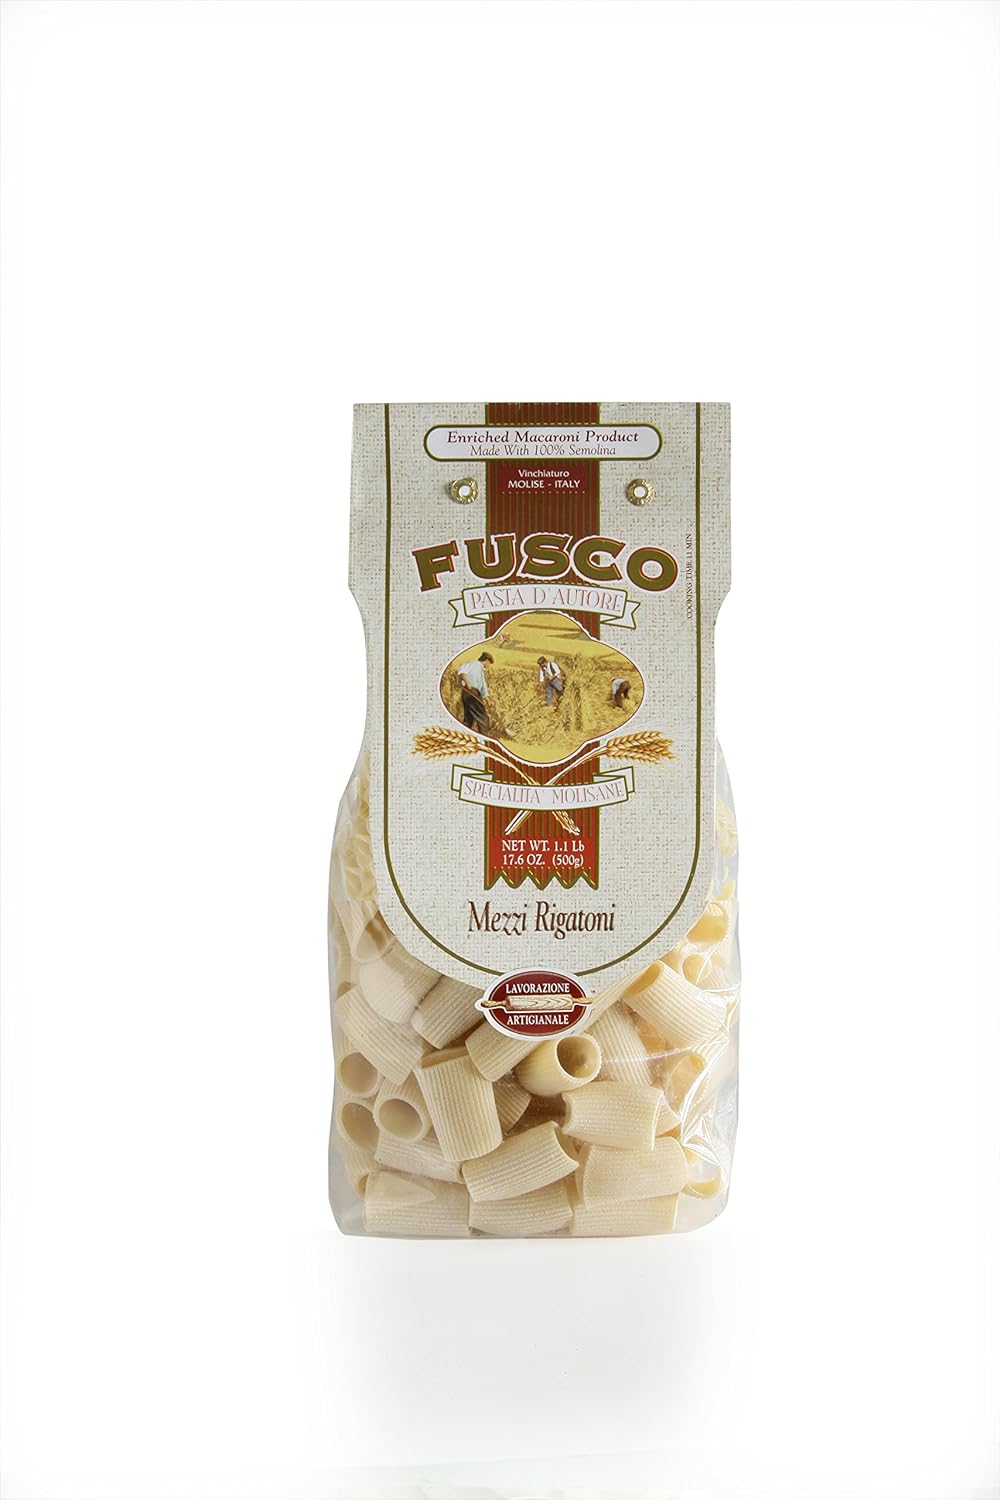 Fusco Pasta - Mezze Rigatoni, 1.1 lb